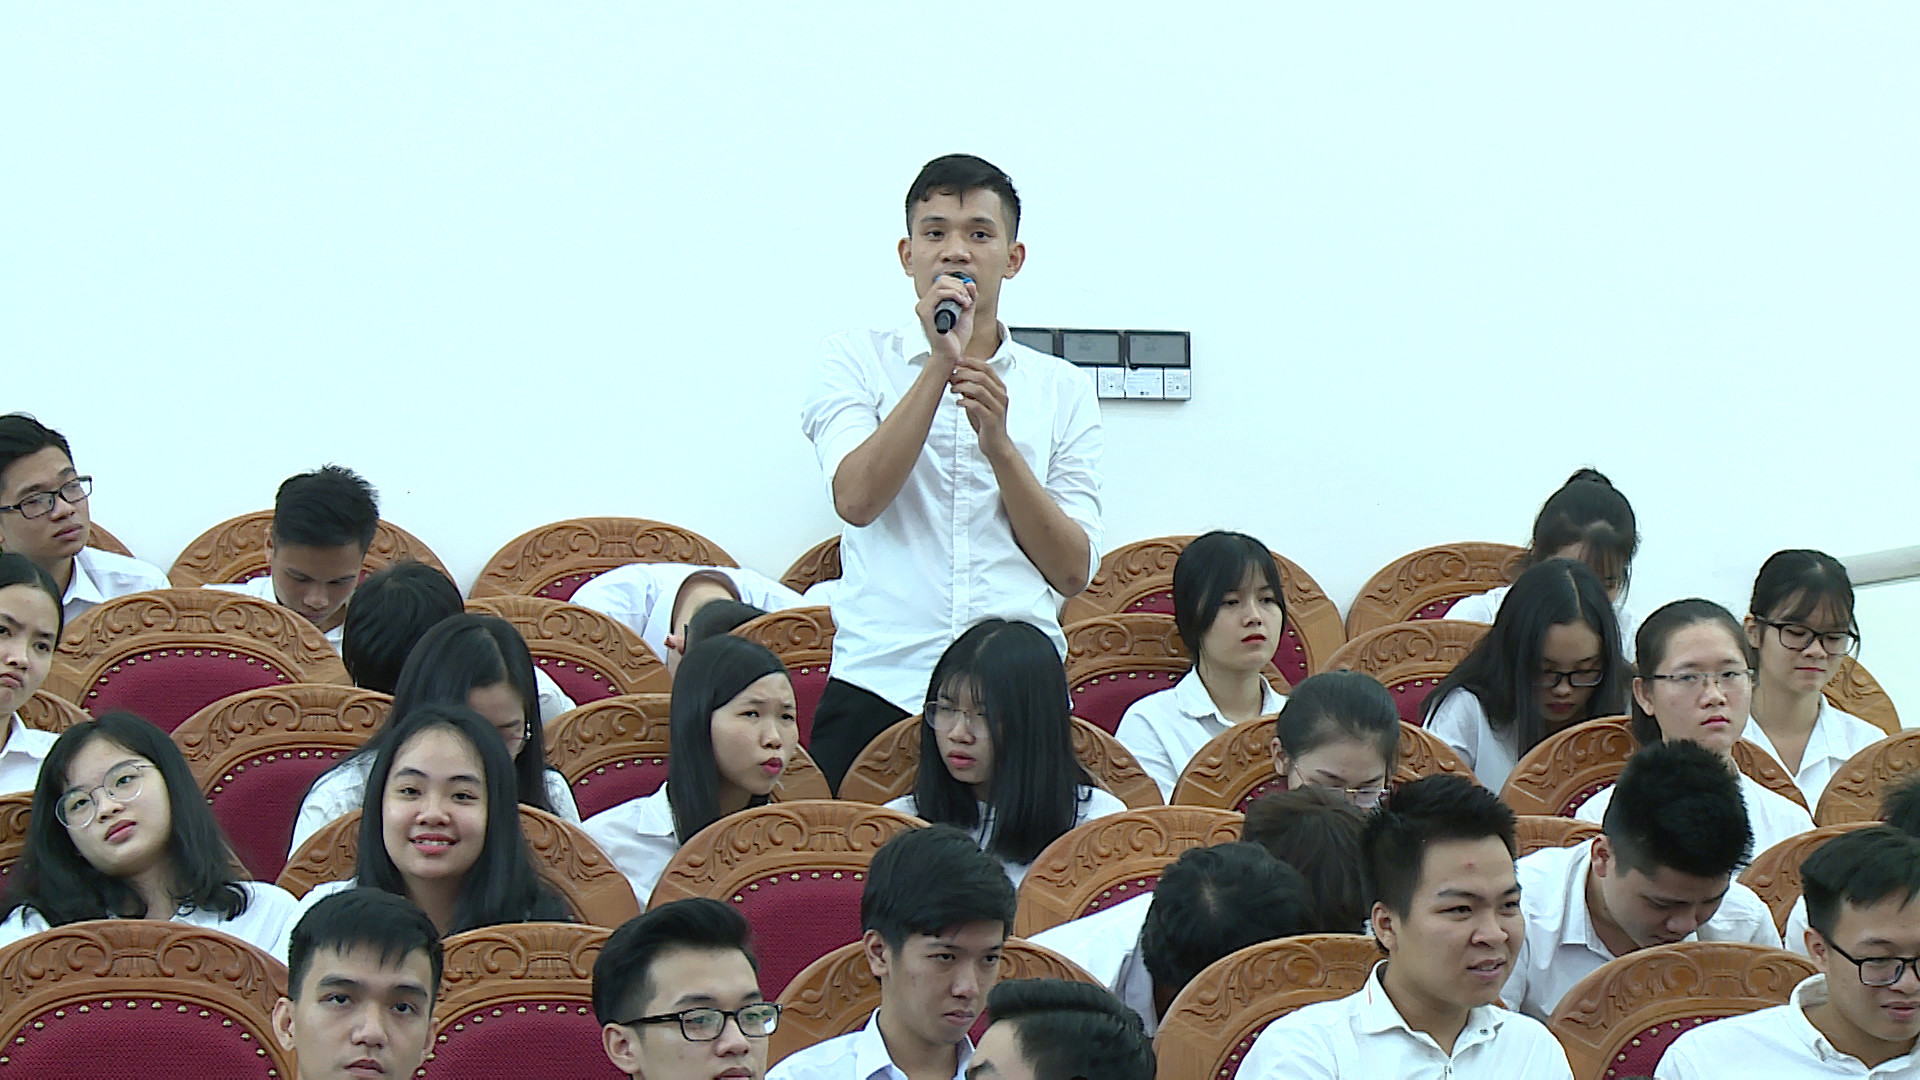 Học viện Tòa án mít tinh chào mừng 36 năm ngày Nhà giáo Việt Nam